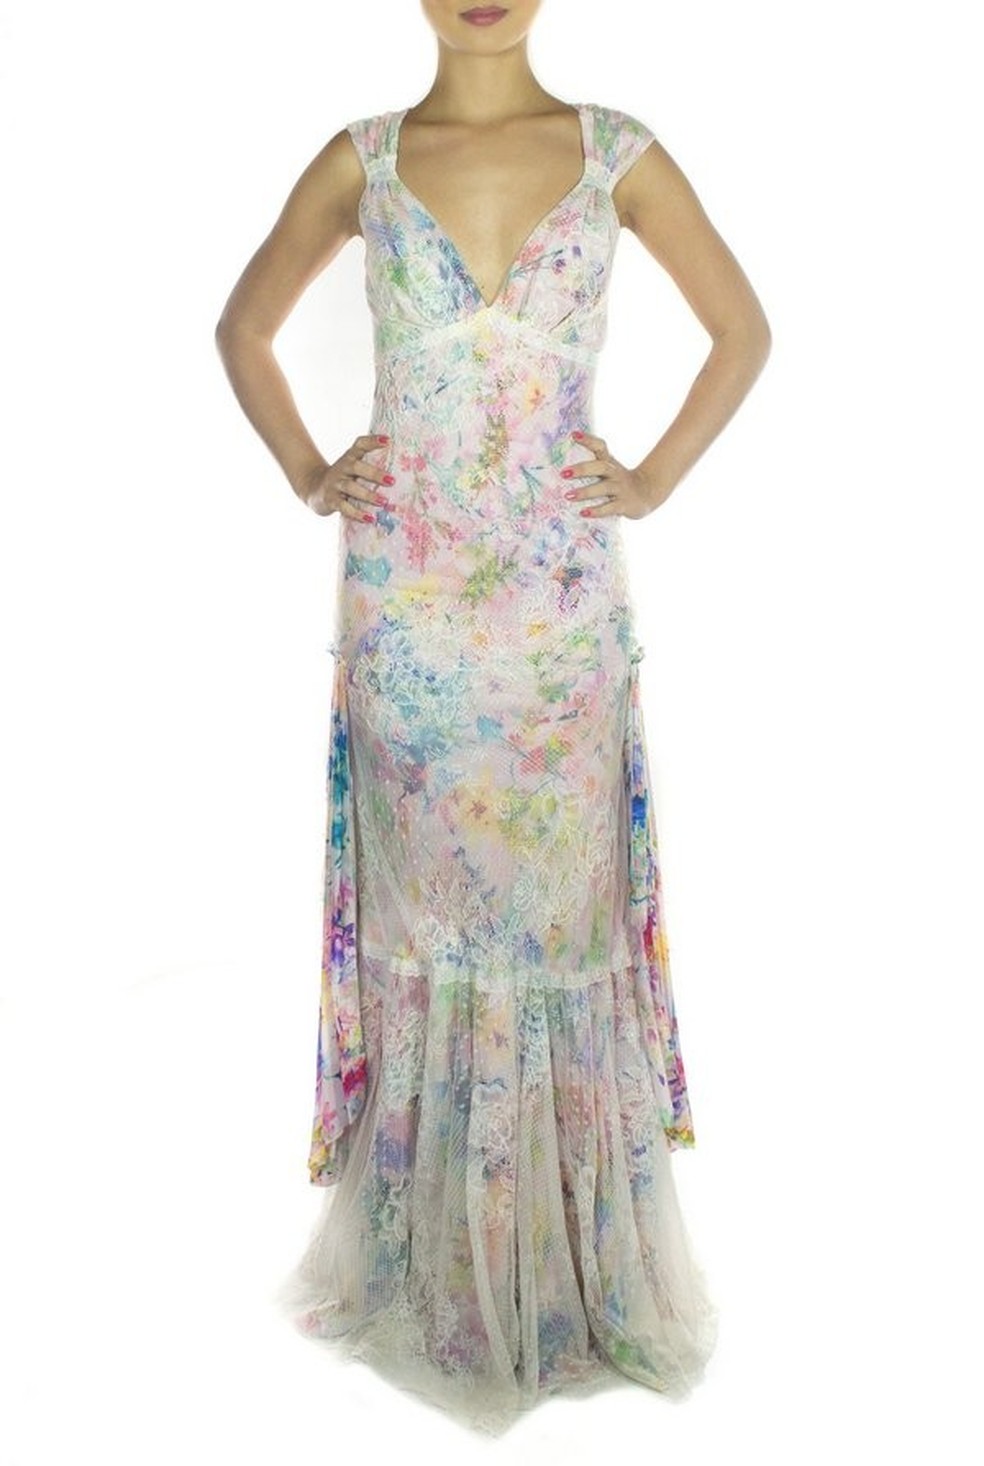 Confeccionado em musseline com estampa floral e tule rendado, este vestido é ideal para quem procura por um look romântico. Da Pó de Arroz por 499 reais (Foto: divulgação ) — Foto: Glamour